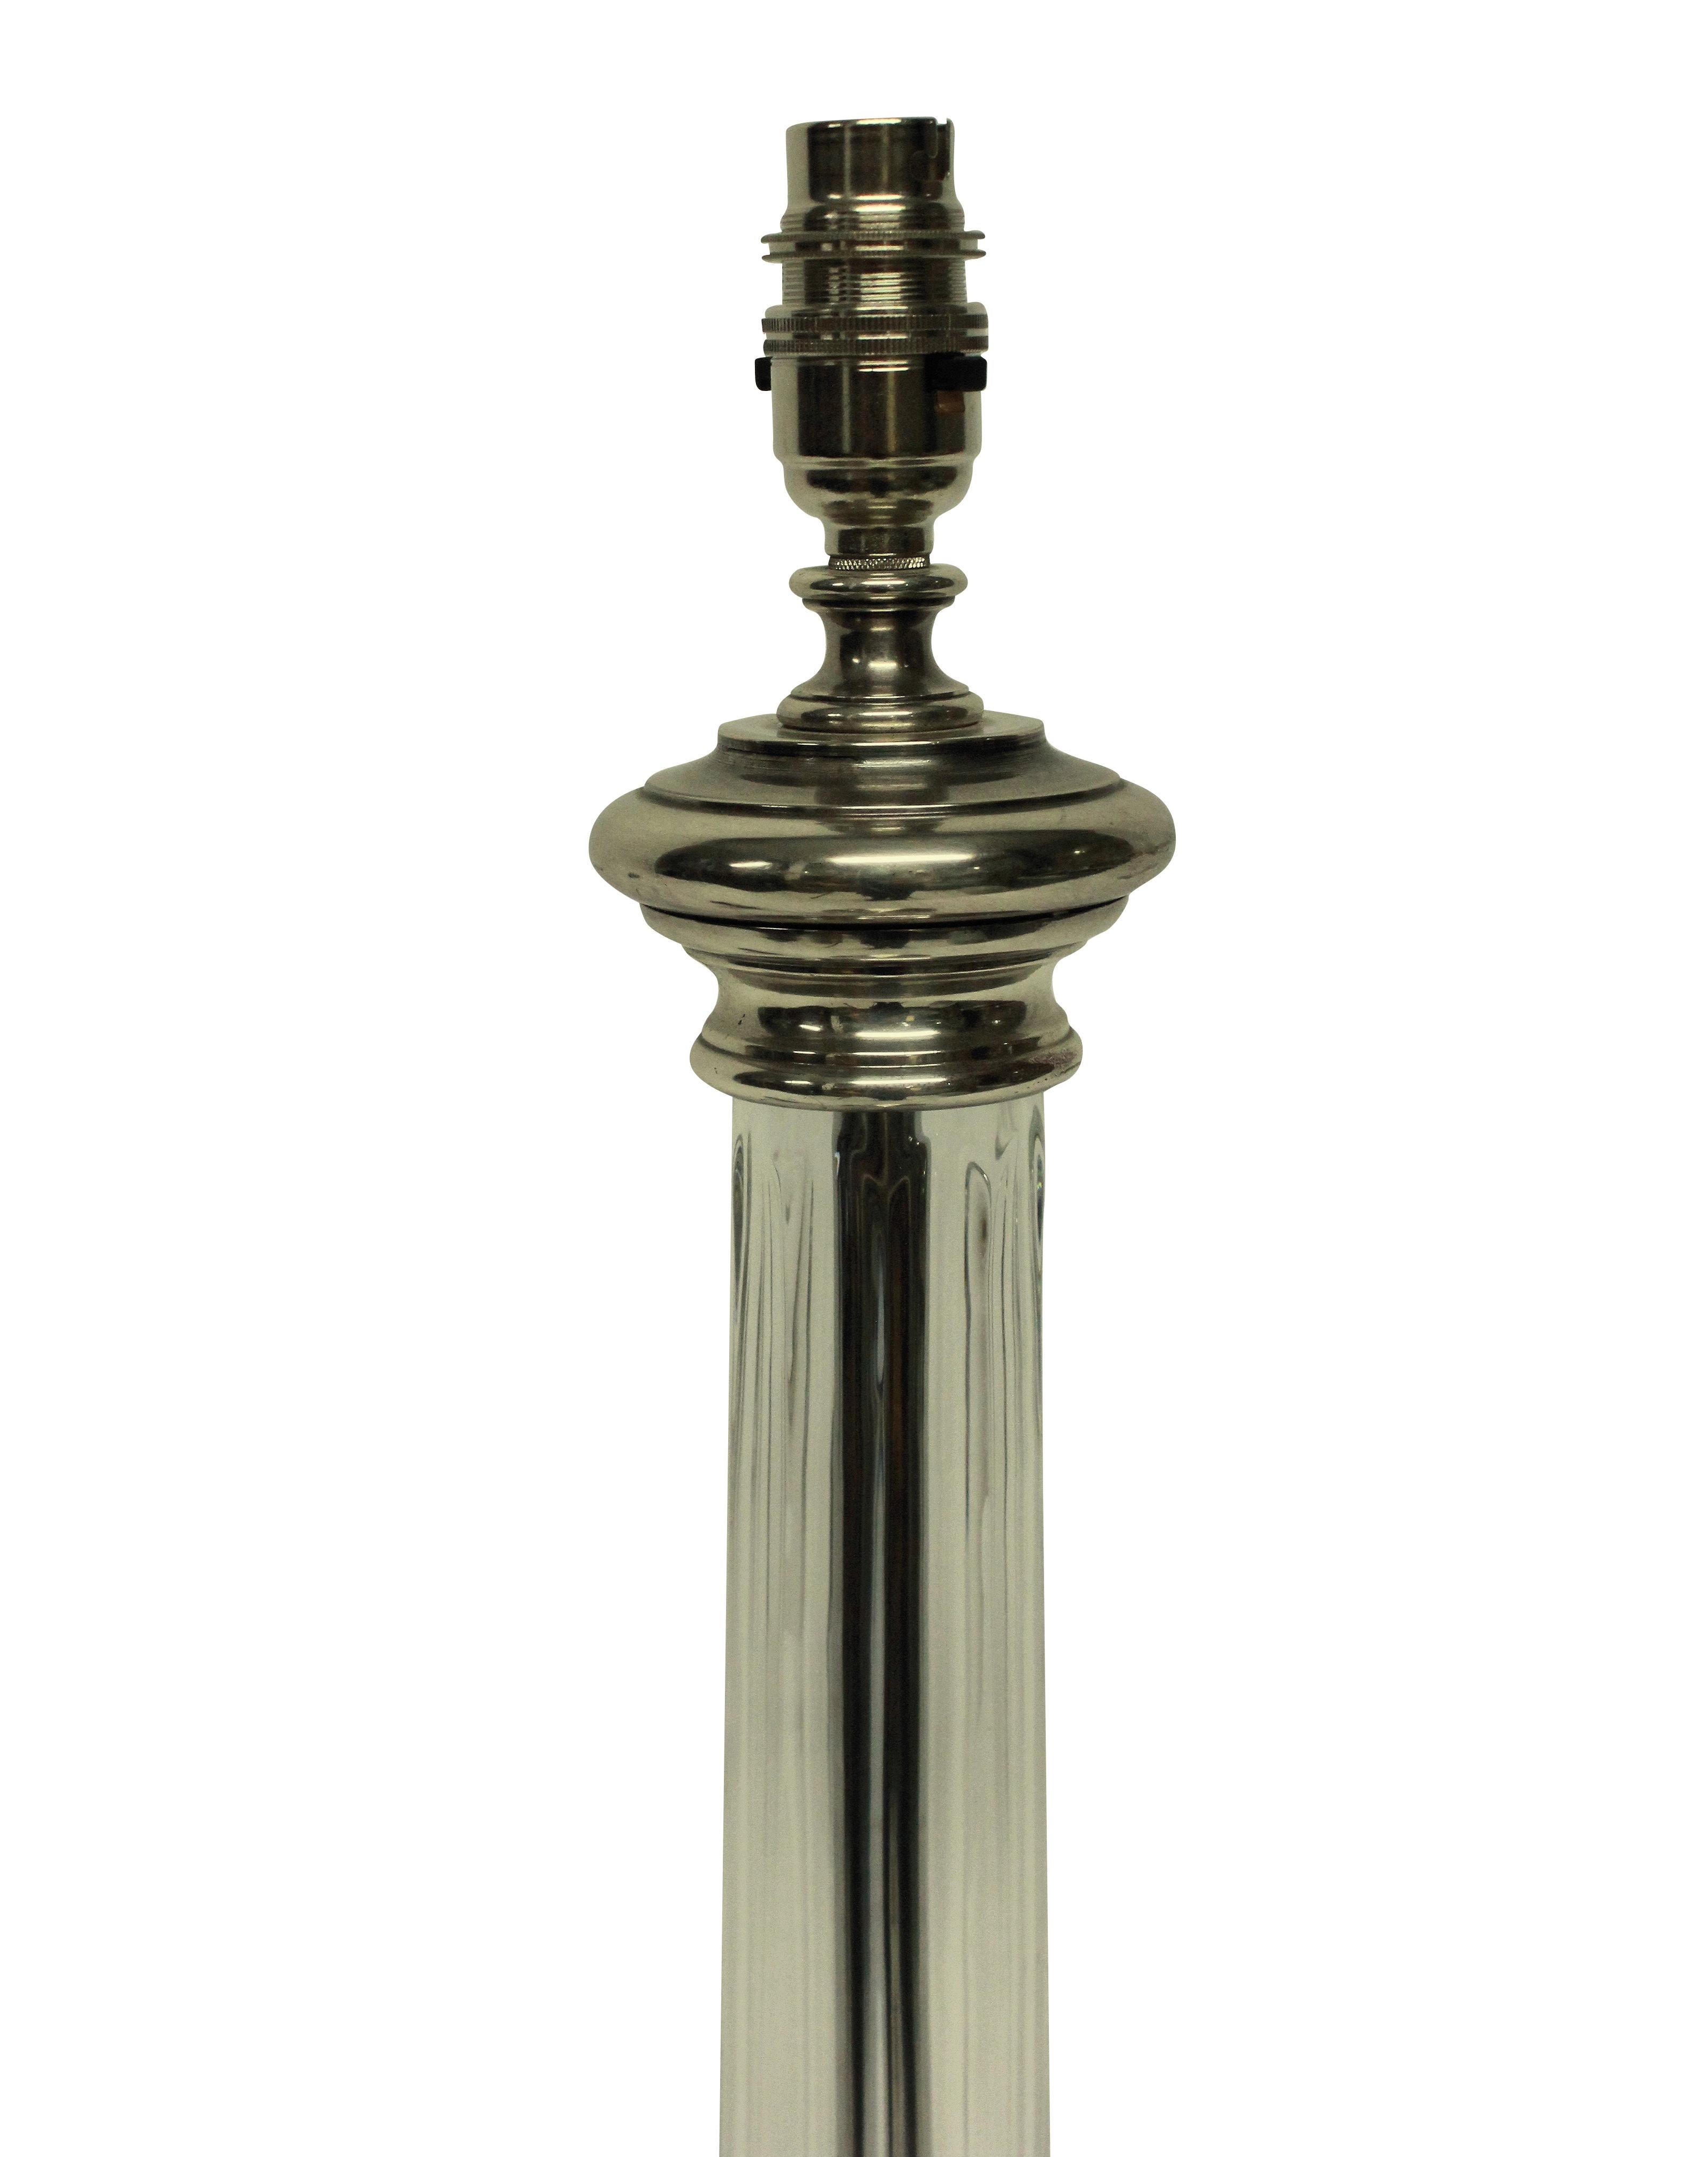 Une paire de lampes anglaises à colonne en verre taillé, avec des bases et des accessoires en métal argenté. Nouvellement électrifié avec des cordons en soie argentée.